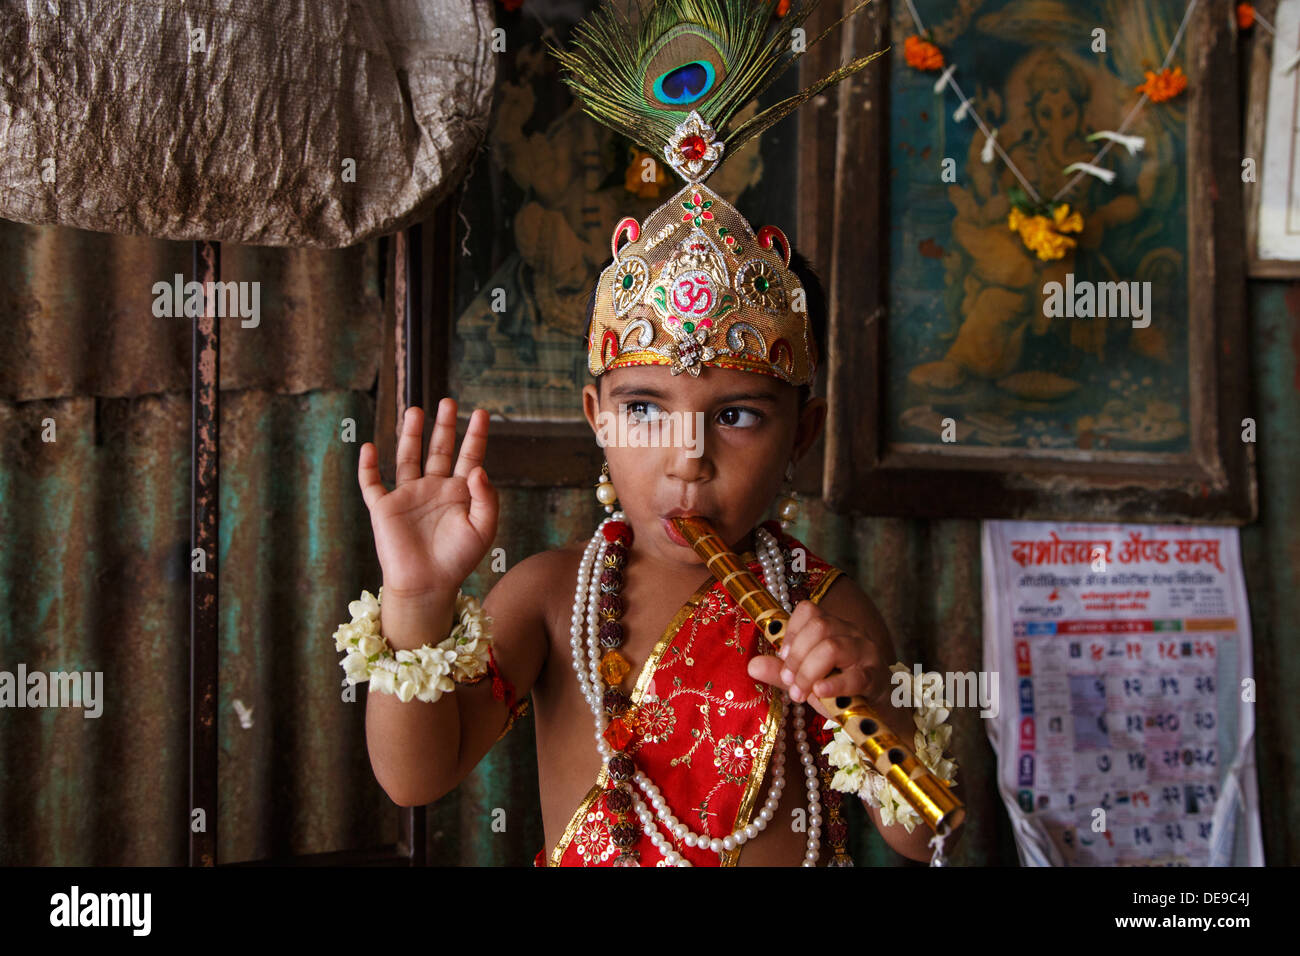 Un niño vestido como el Señor Krishna durante el festival de Janmashtami en Dadar zona de Mumbai, India. Foto de stock